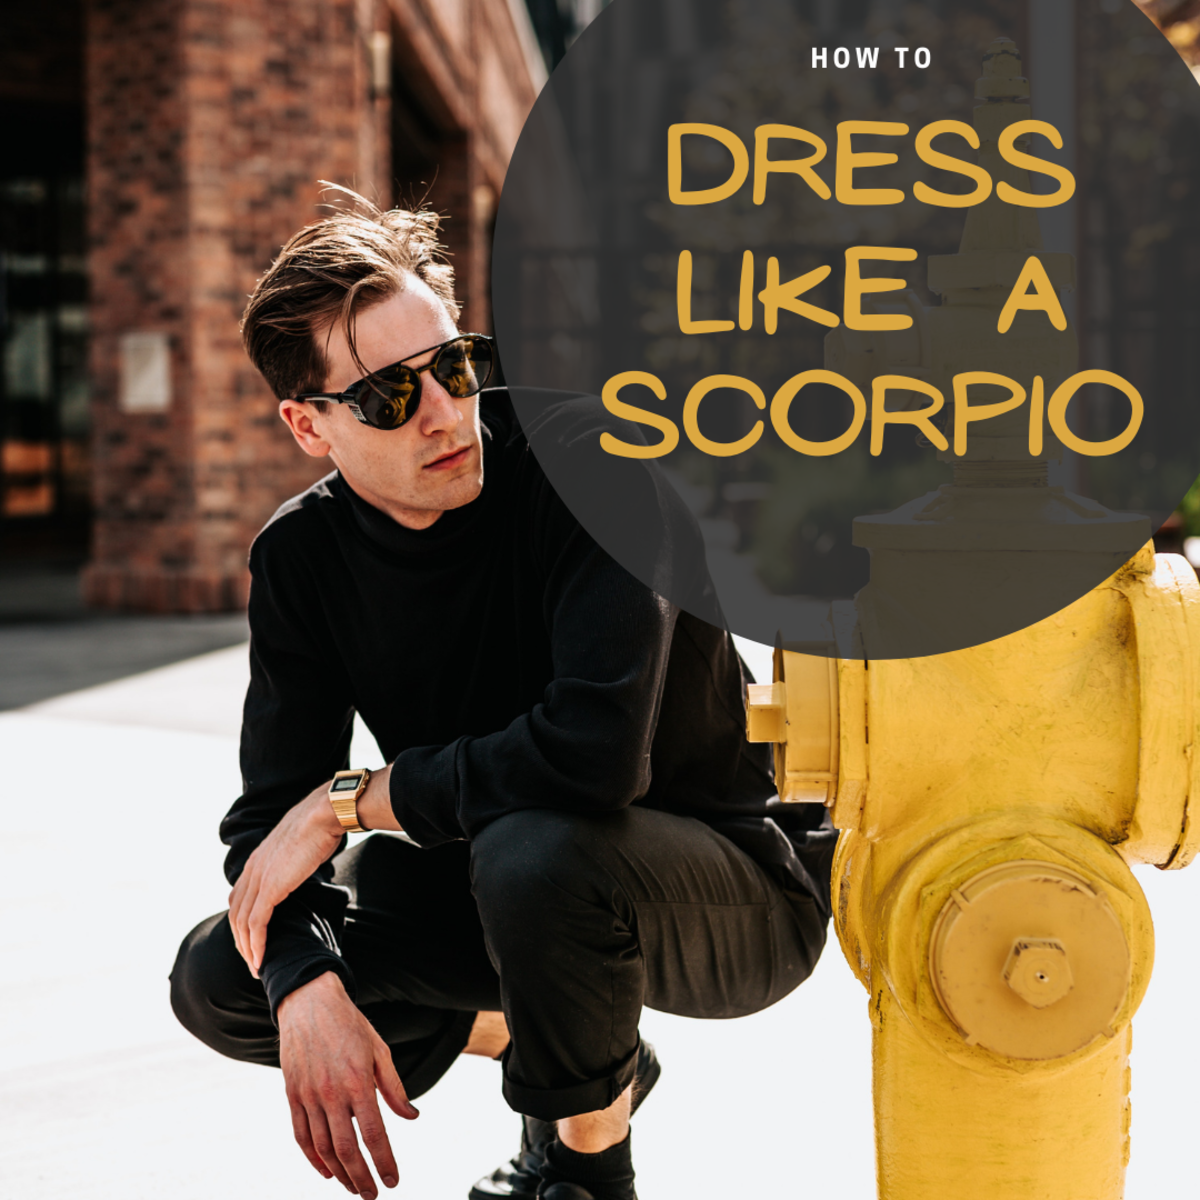 How to Dress Like a Scorpio